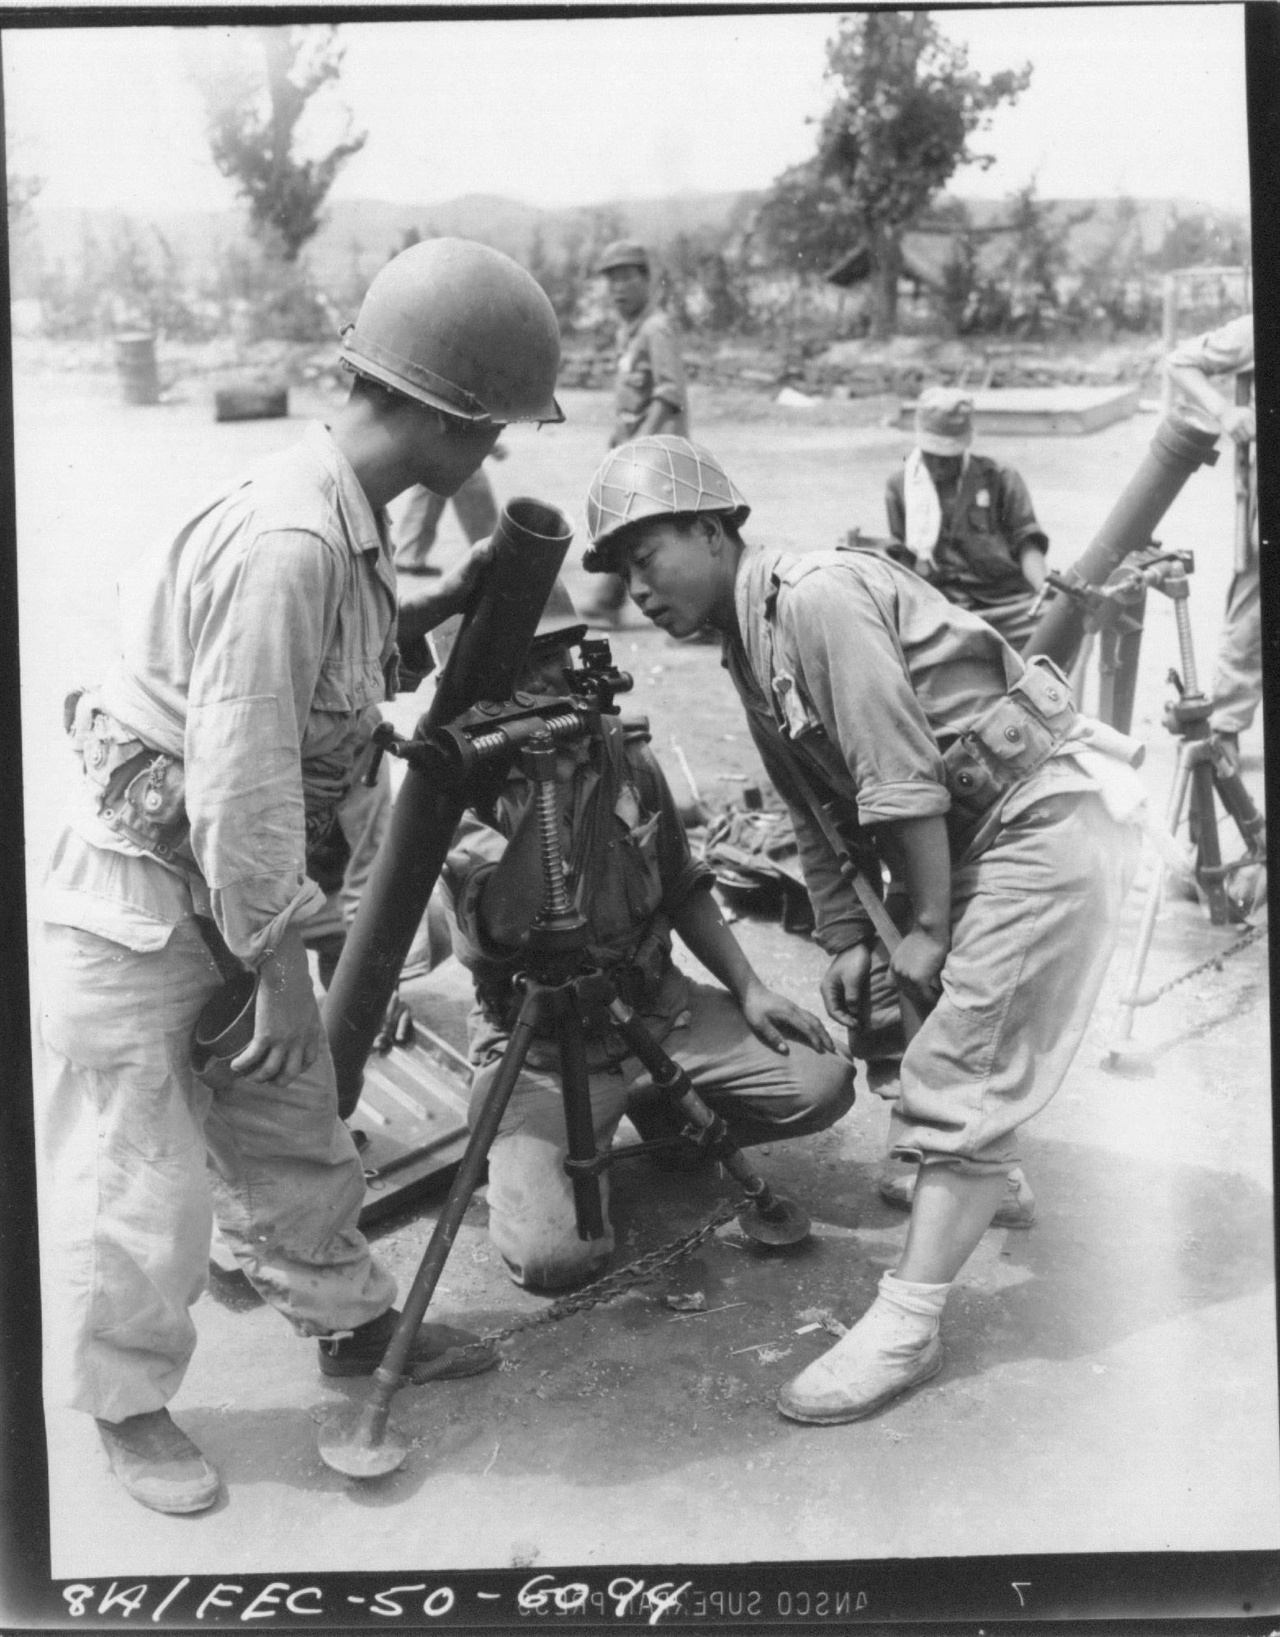 1950. 8. 13. 국군 훈련병들이 박격포 조준 연습을 하고 있다.